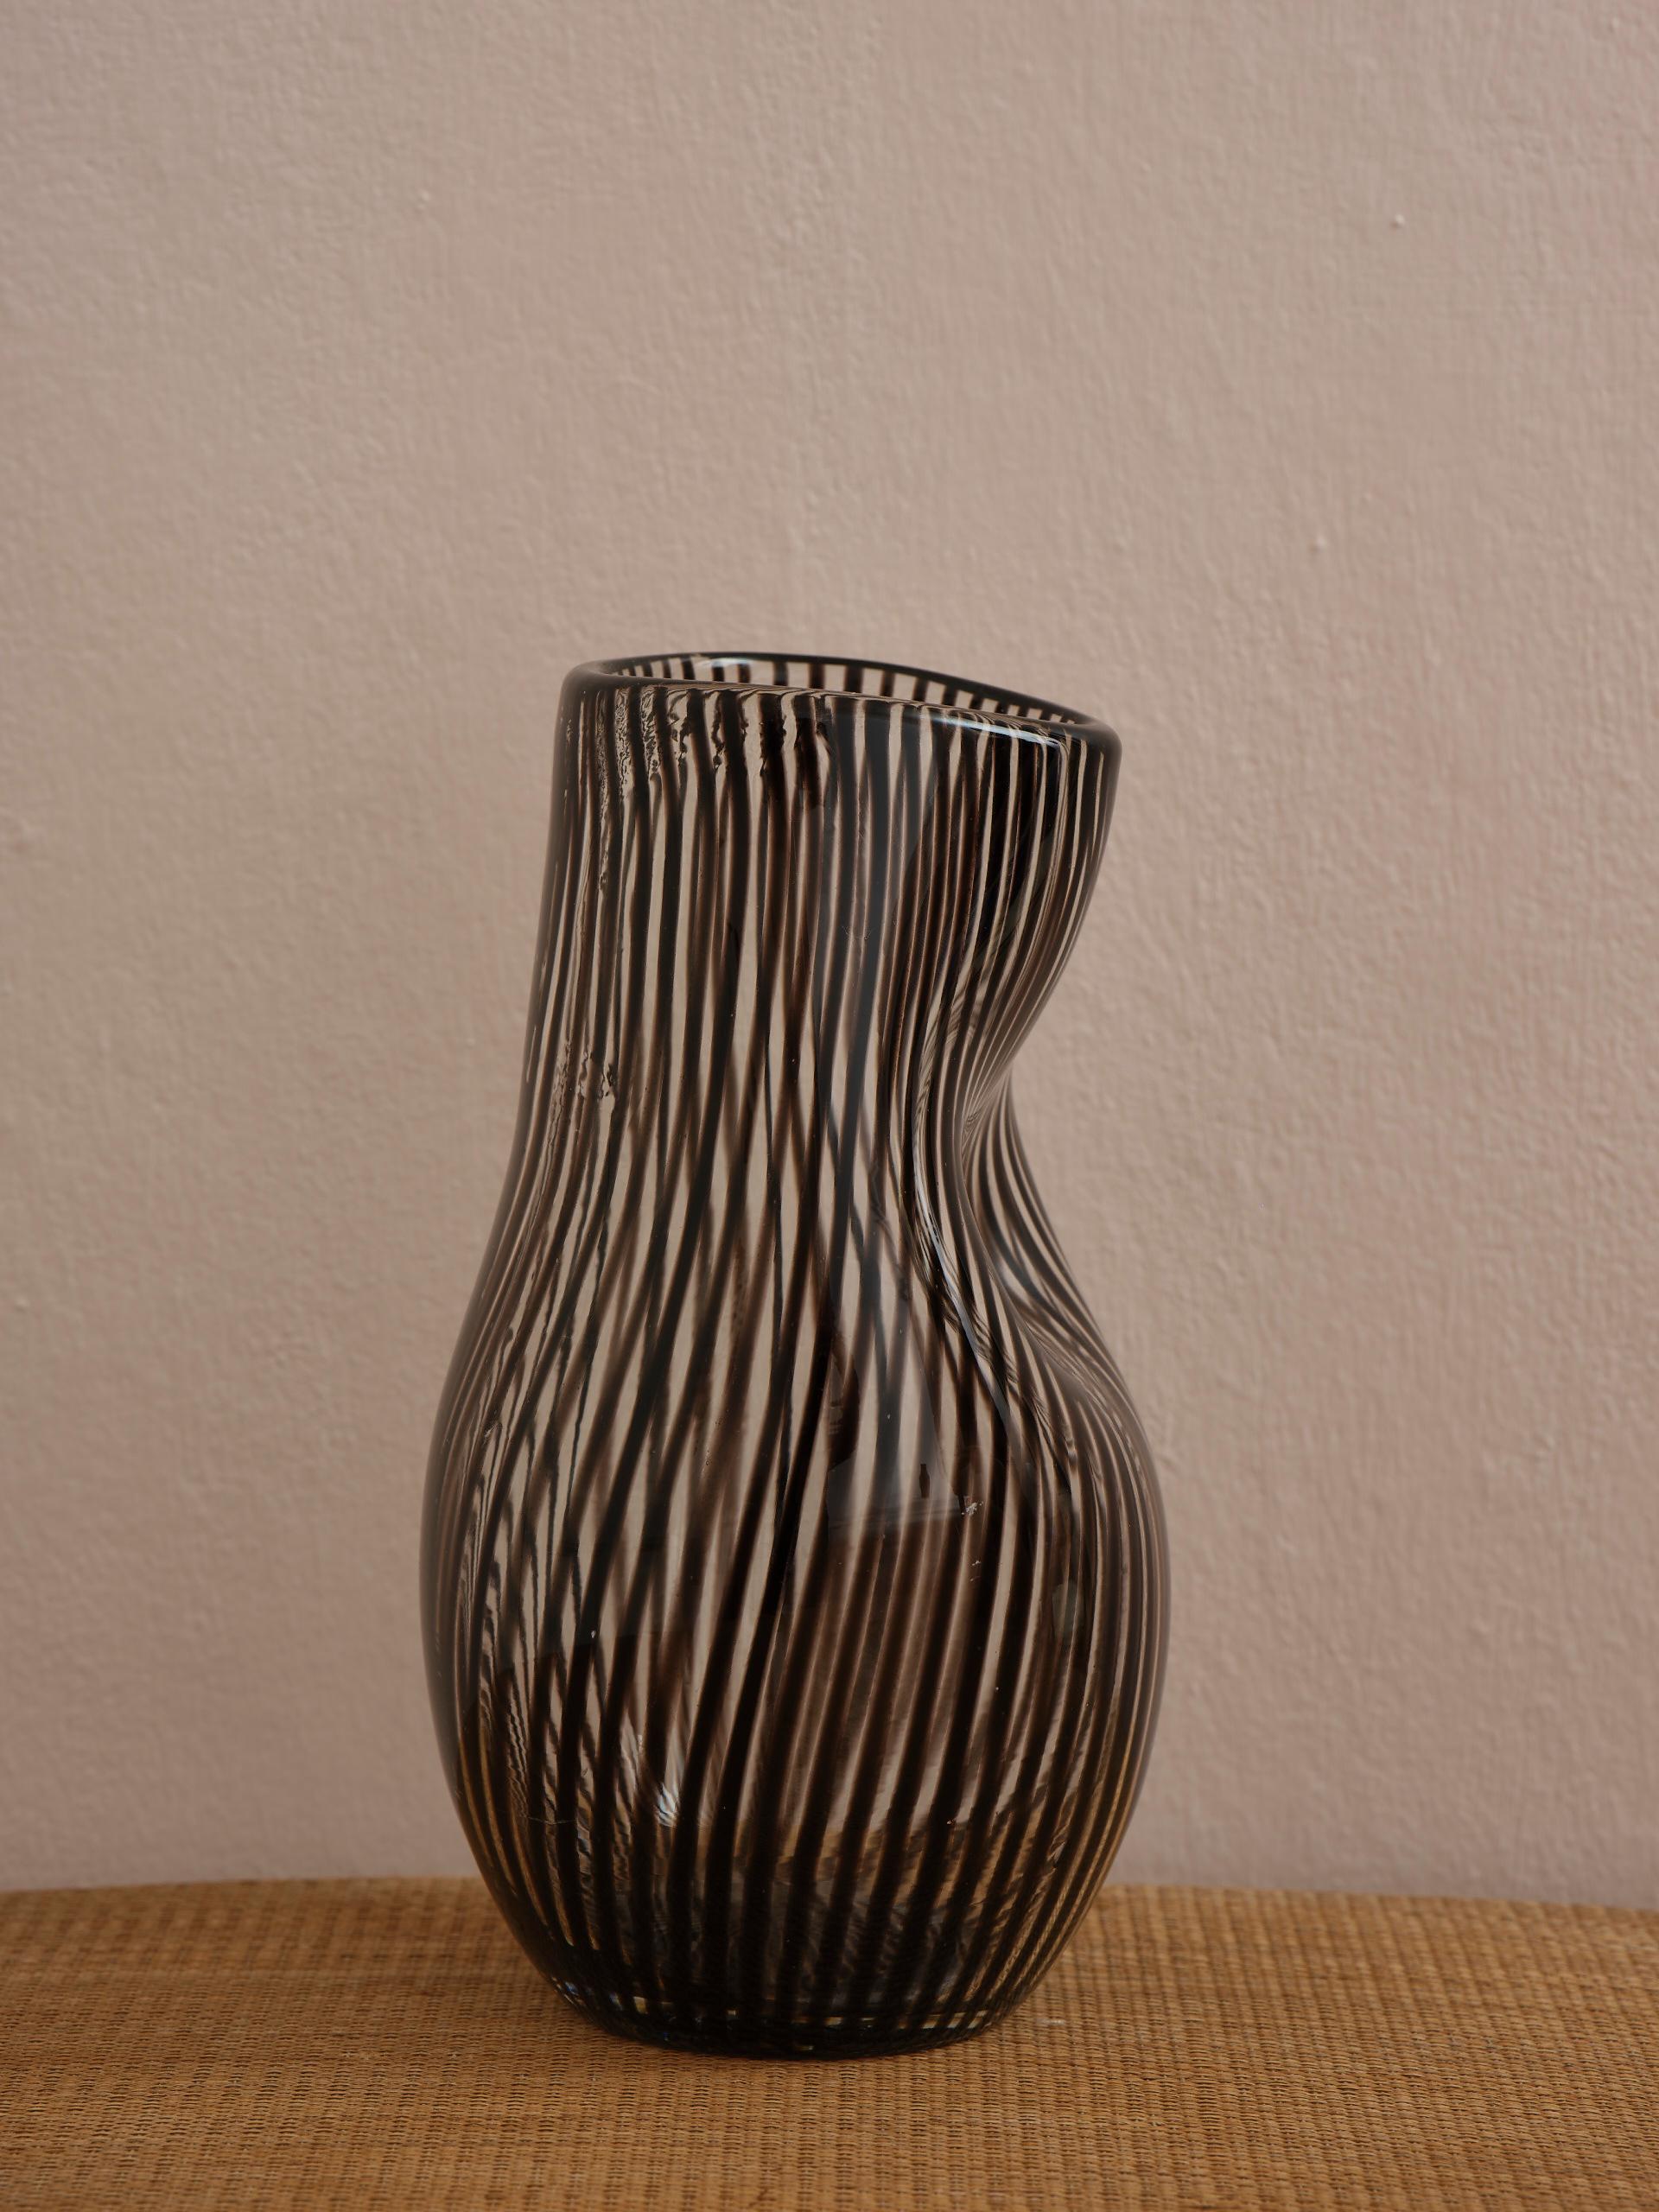 Ce vase suédois du milieu du siècle à lourdes rayures en verre bordeaux et transparent, soufflé à la bouche et façonné à la main avec les plus belles formes, n'a rien de rectiligne. 
Une pièce unique de l'artisanat du milieu du 20e siècle.
Hauteur